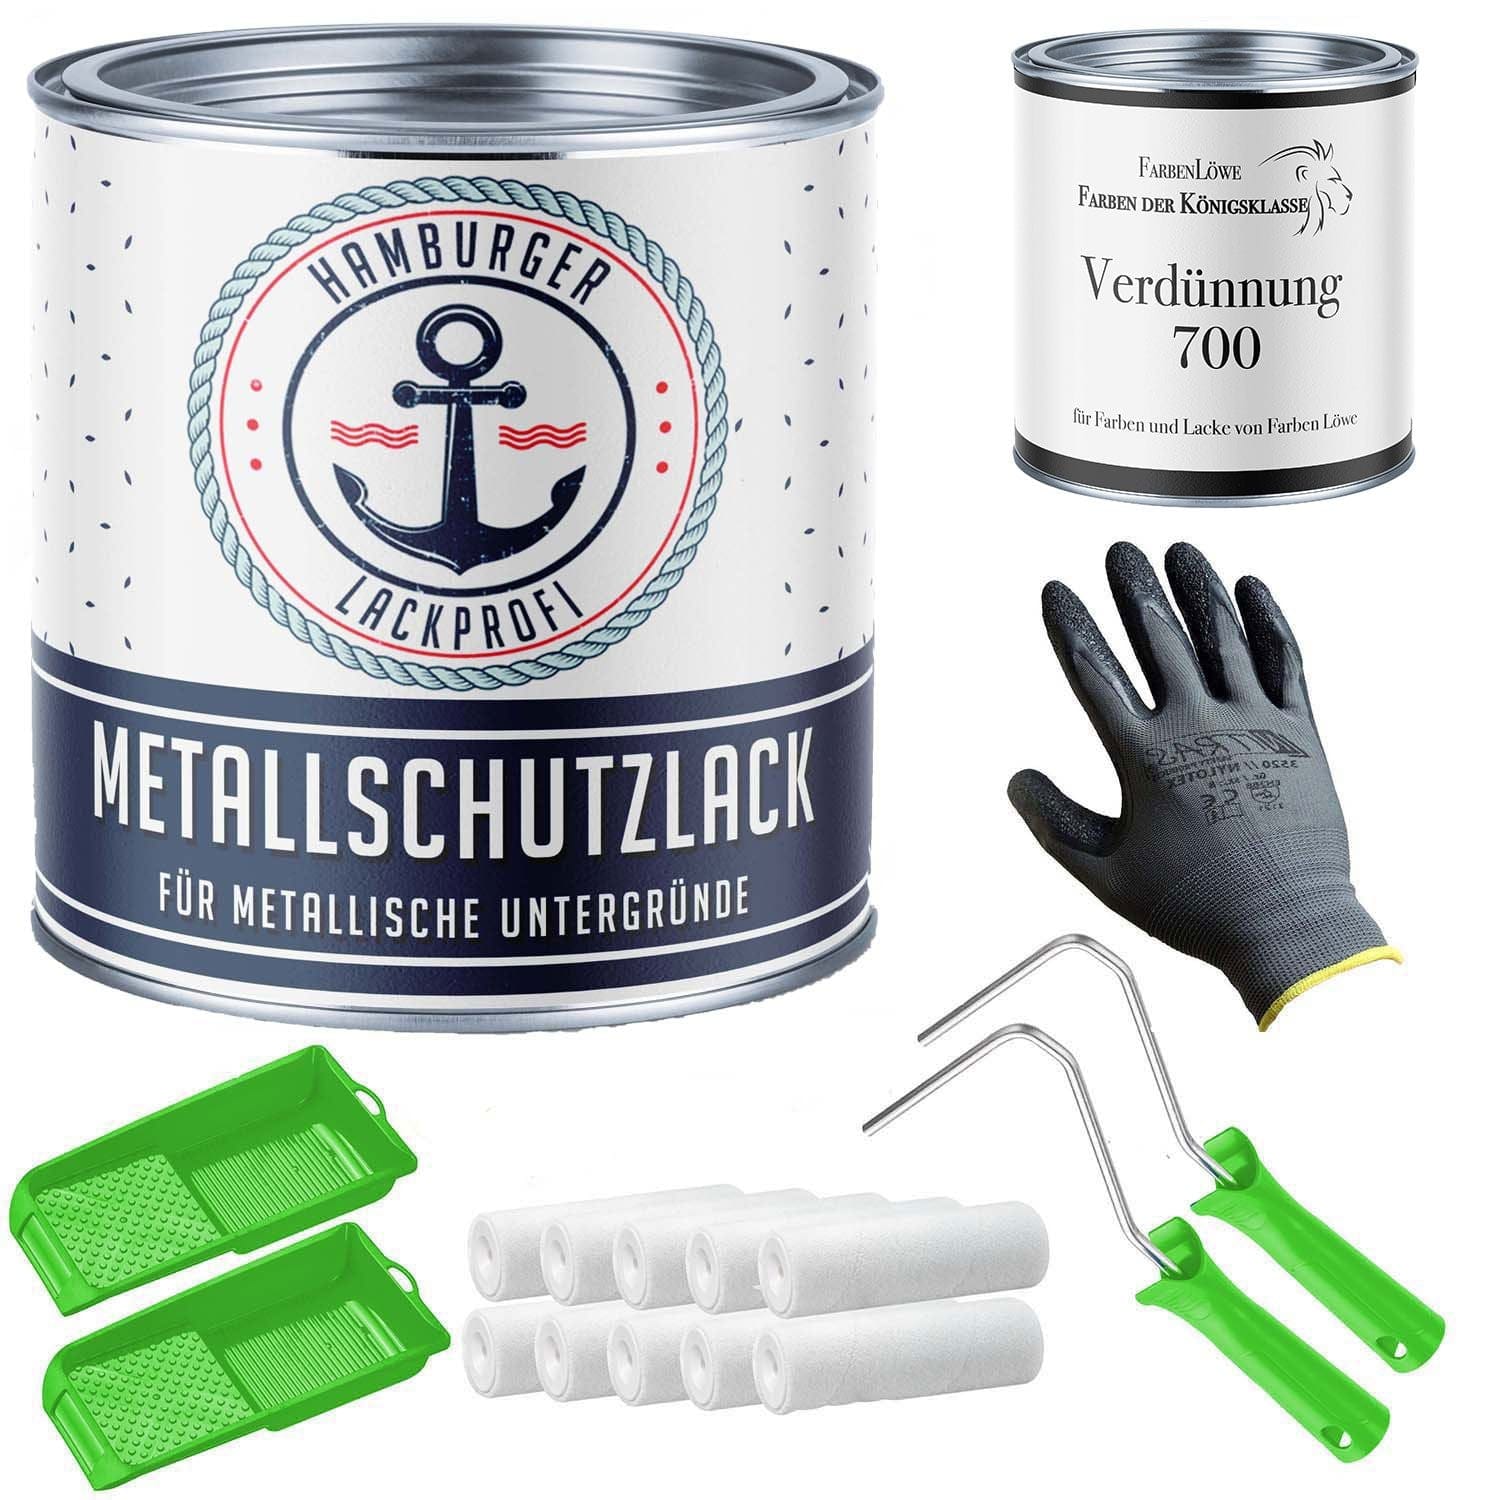 FARBENLÖWE Lacke & Beschichtungen Hamburger Lack-Profi Metallschutzlack in Blaugrau RAL 7031 mit Lackierset (X300) & Verdünnung (1 L) - 30% Sparangebot